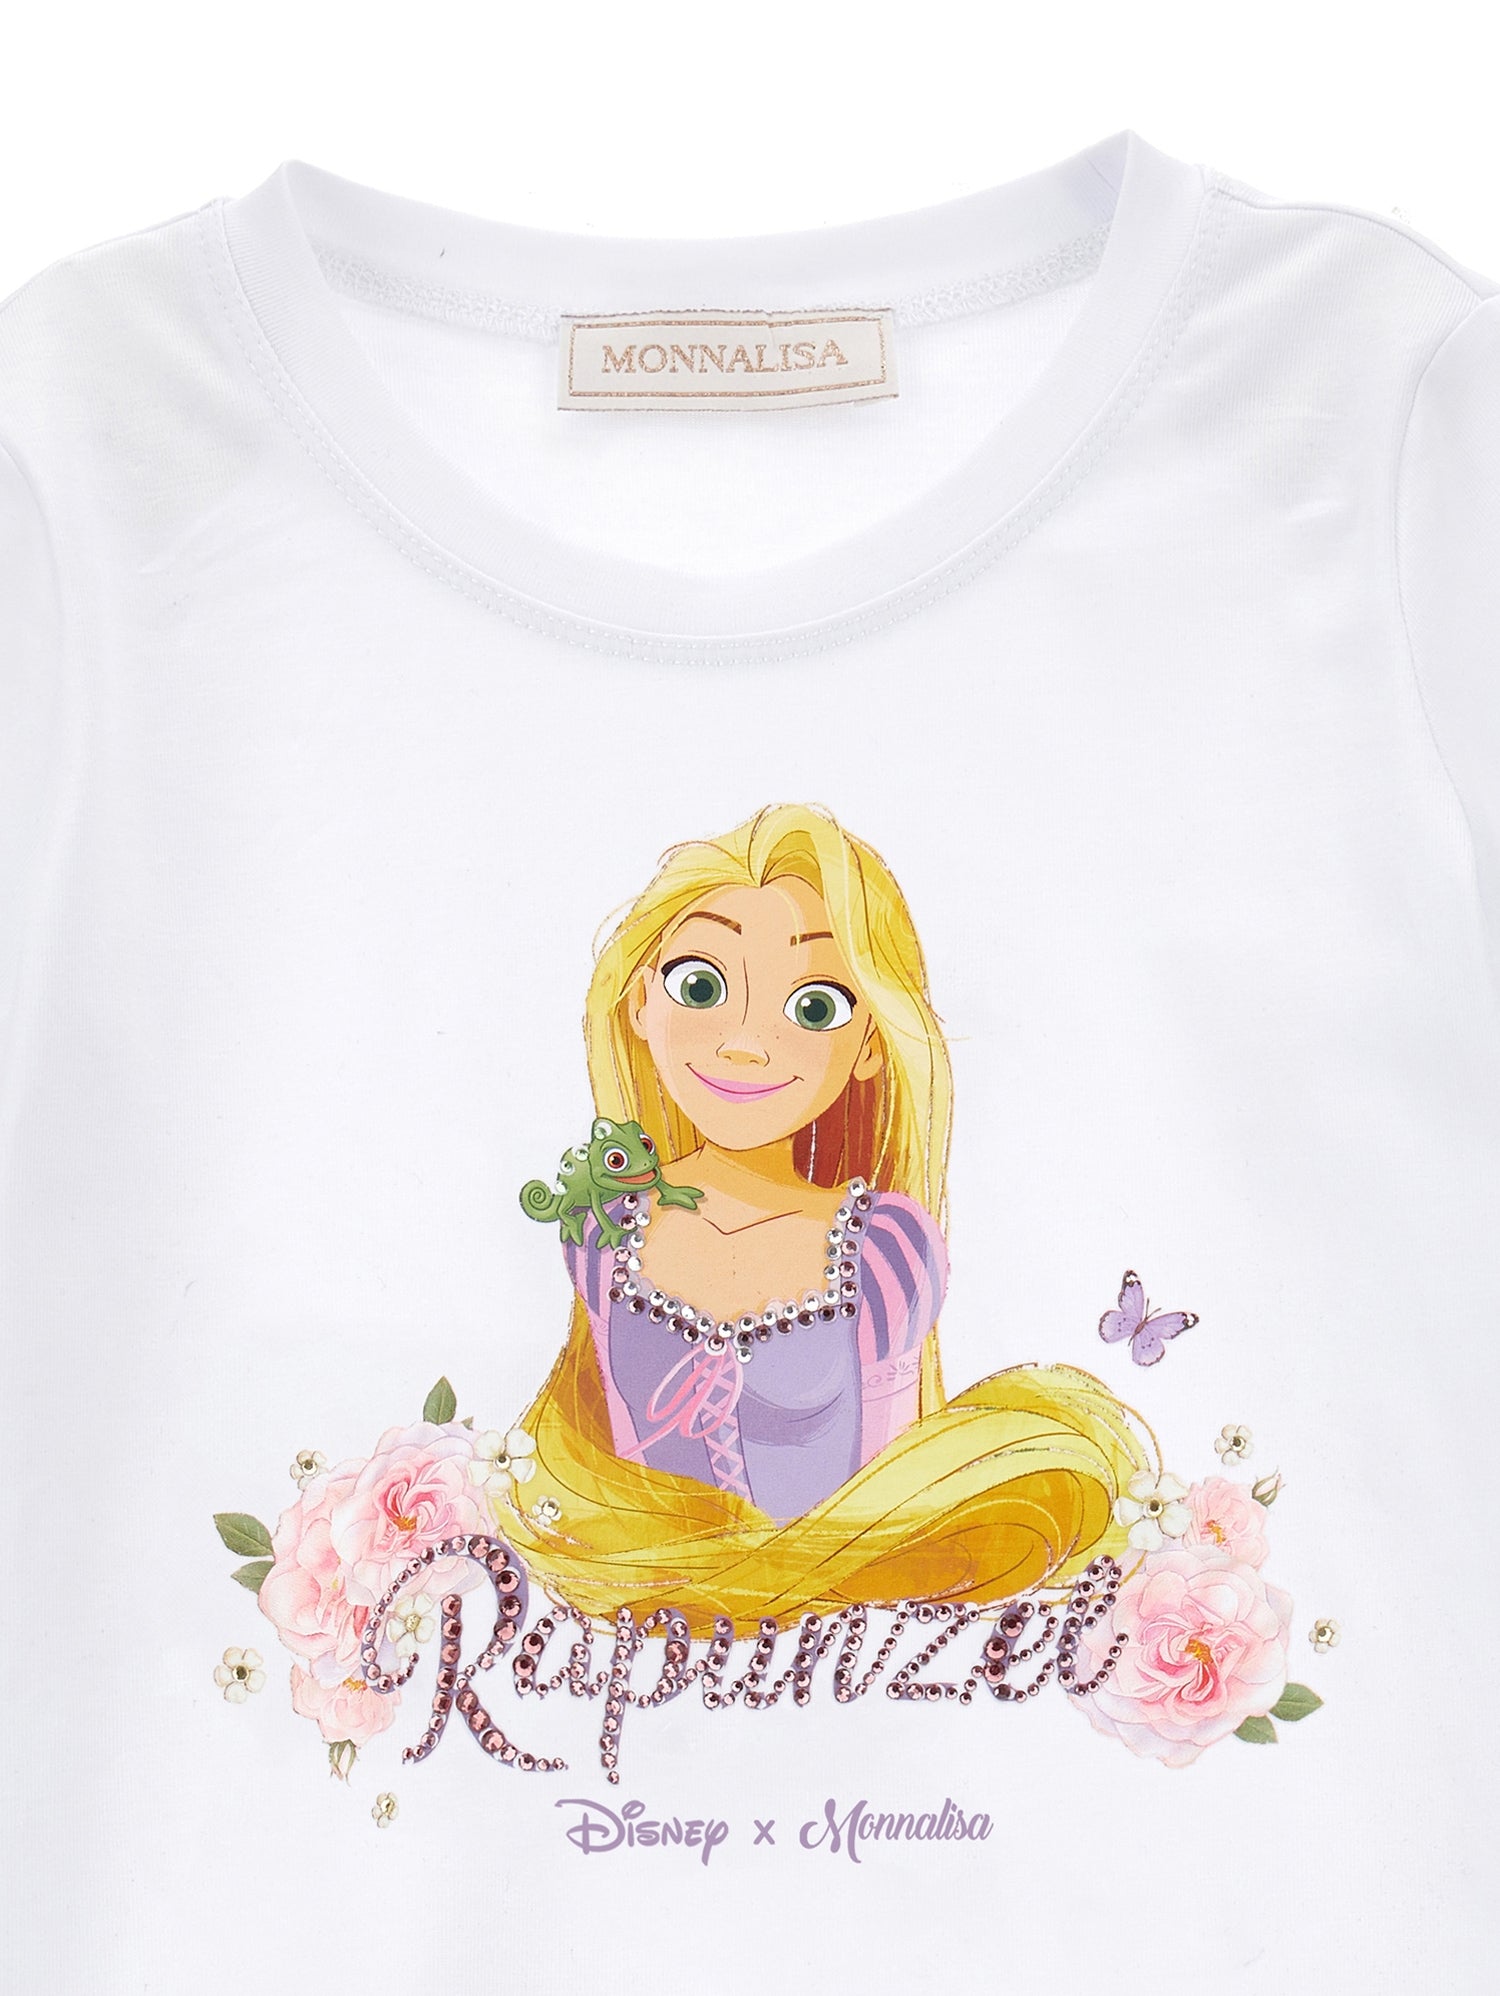 T-shirt jersey Rapunzel